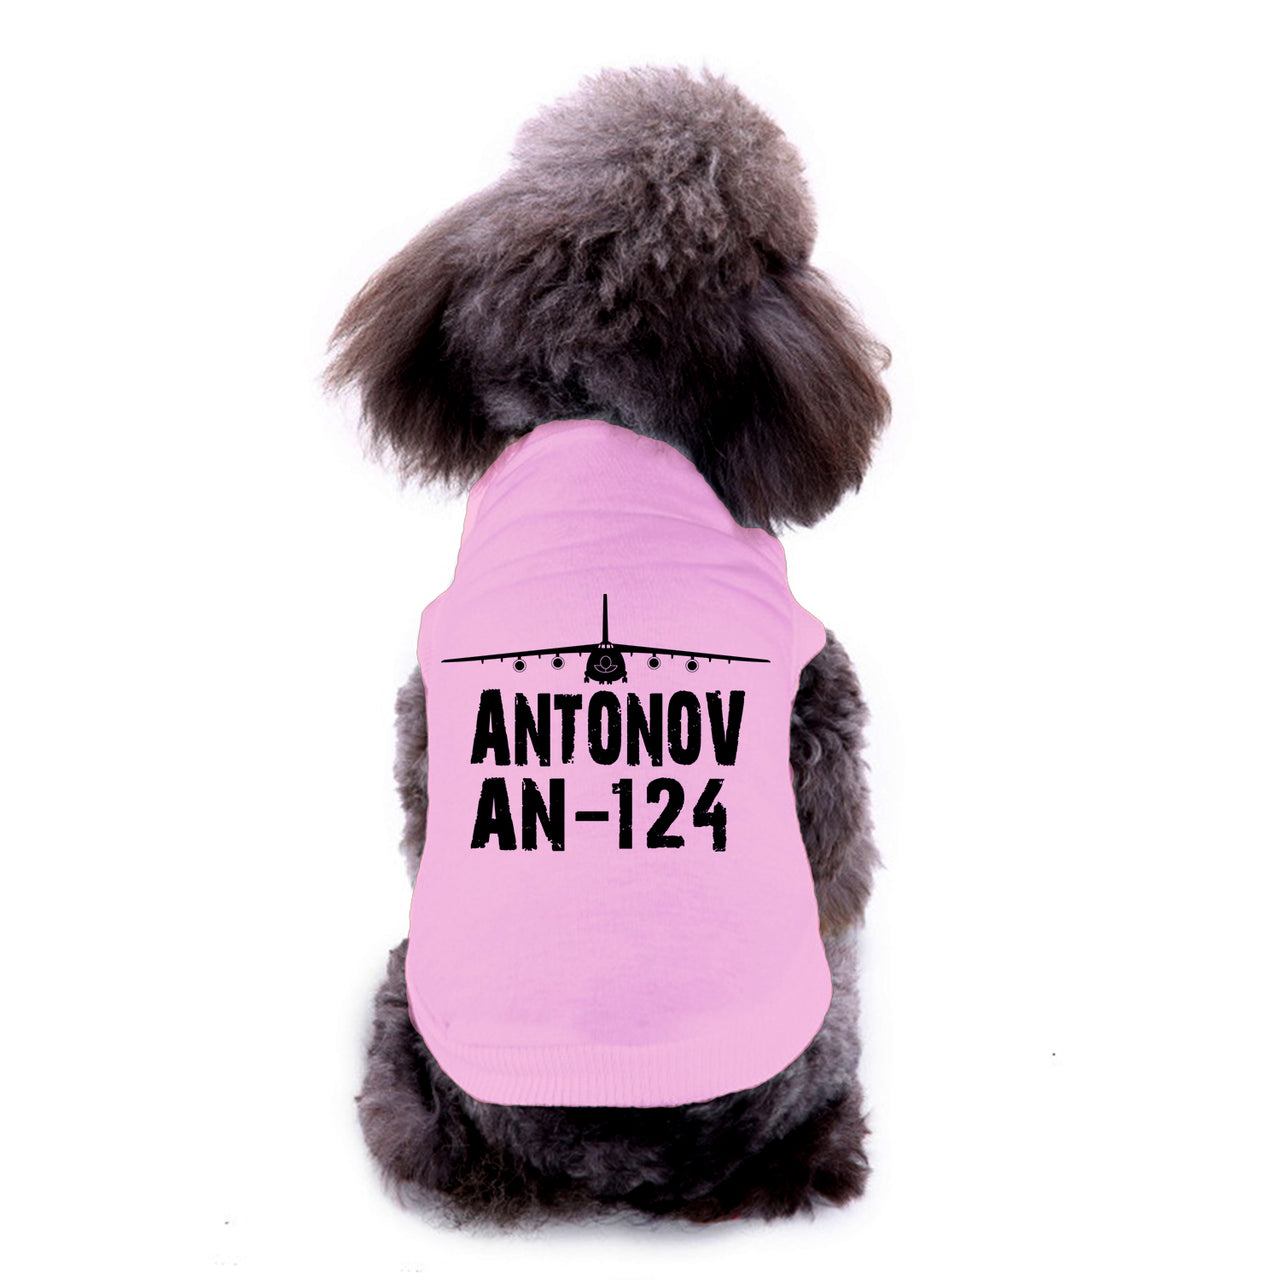 Antonov AN-124 & Plane Designed Dog Pet Vests